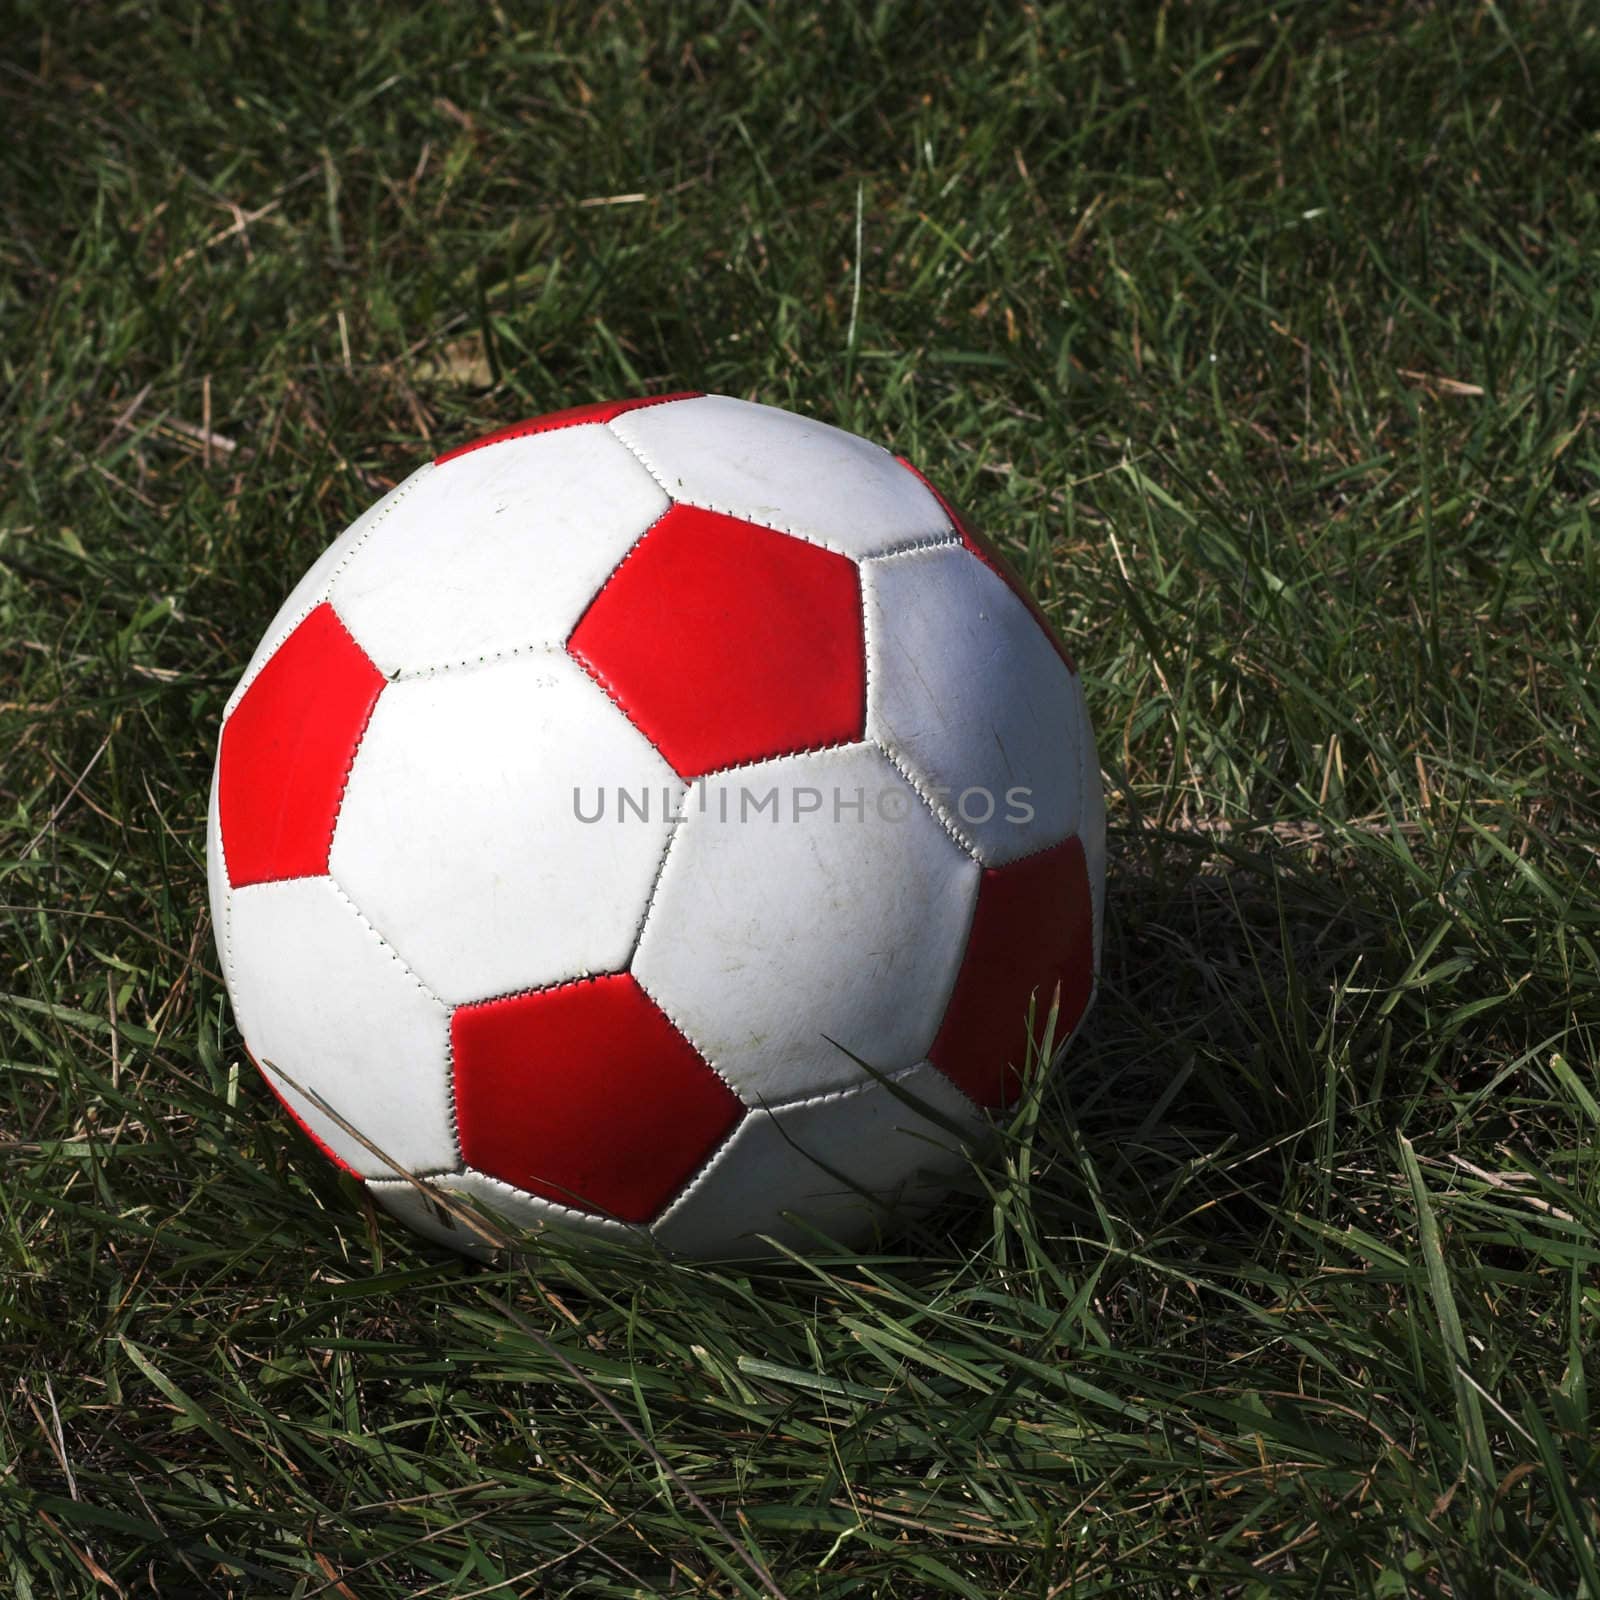  Soccer ball on the grass